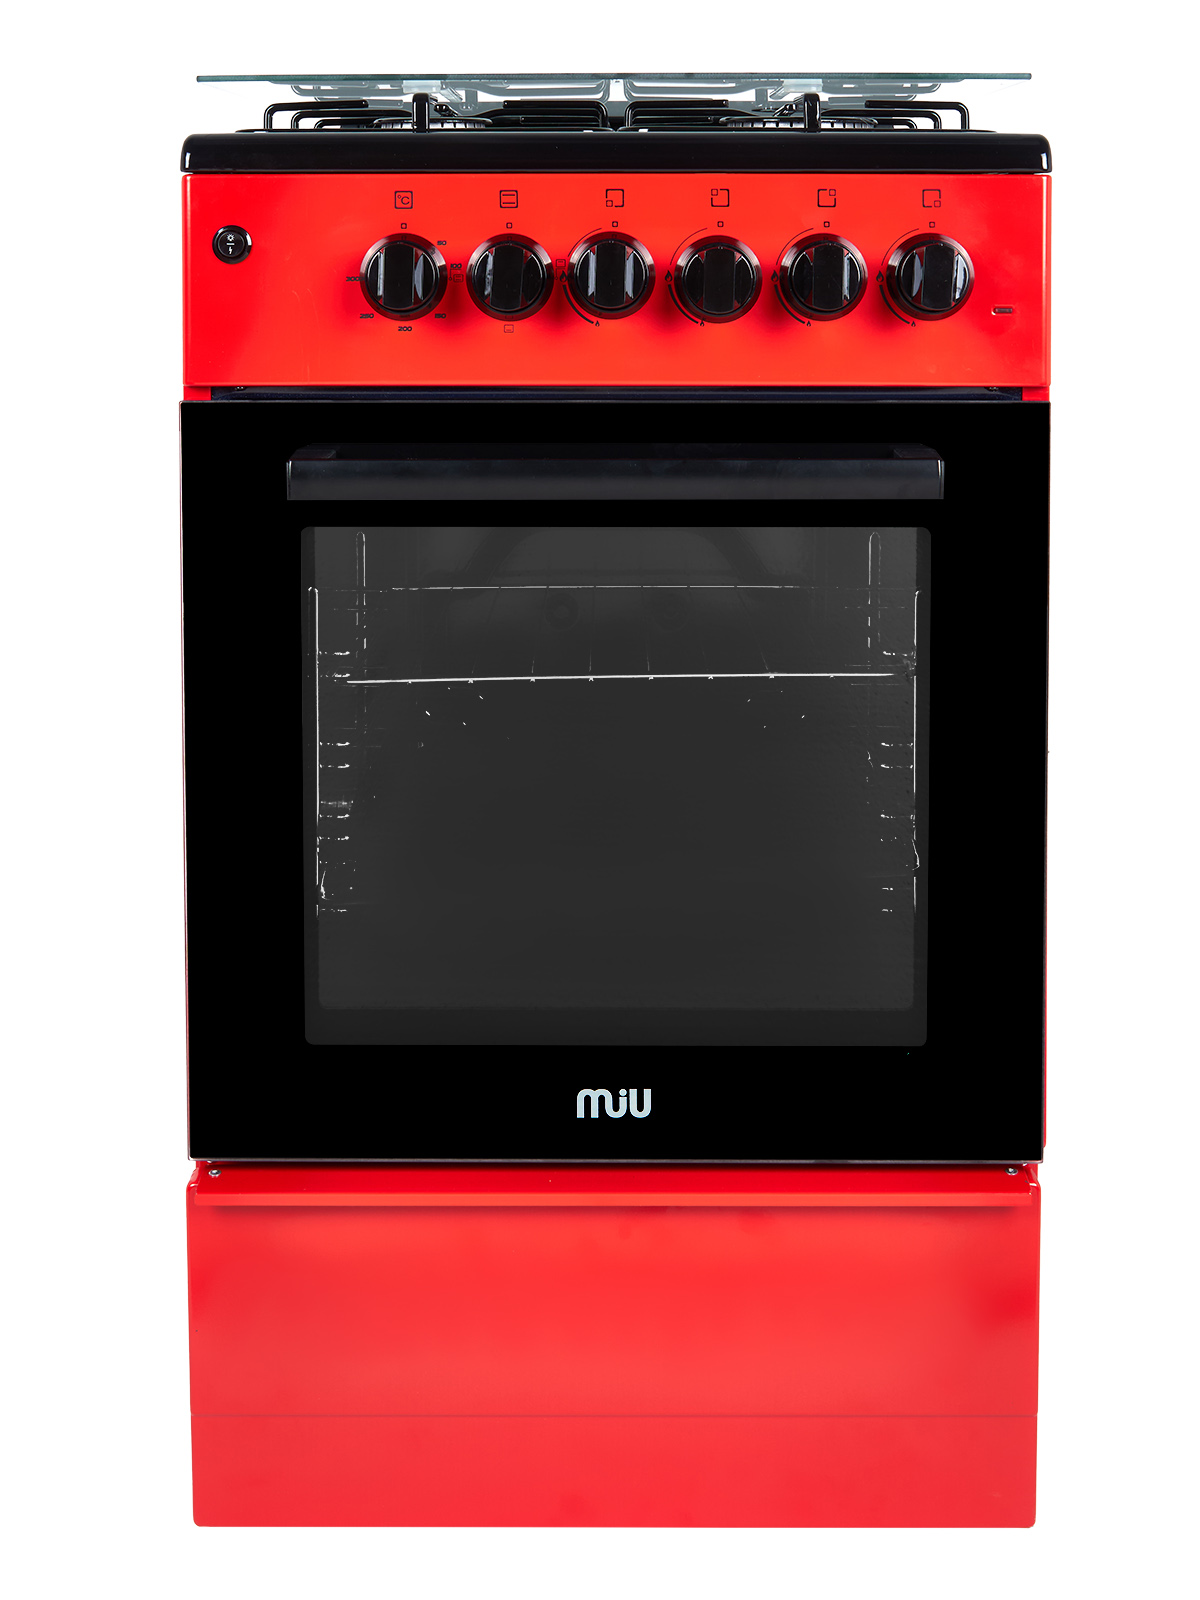 Комбинированная плита MIU 5014 ERP ГК LUX красный кастрюля 3 л стеклянная крышка антипригарное покрытие тёмный мрамор